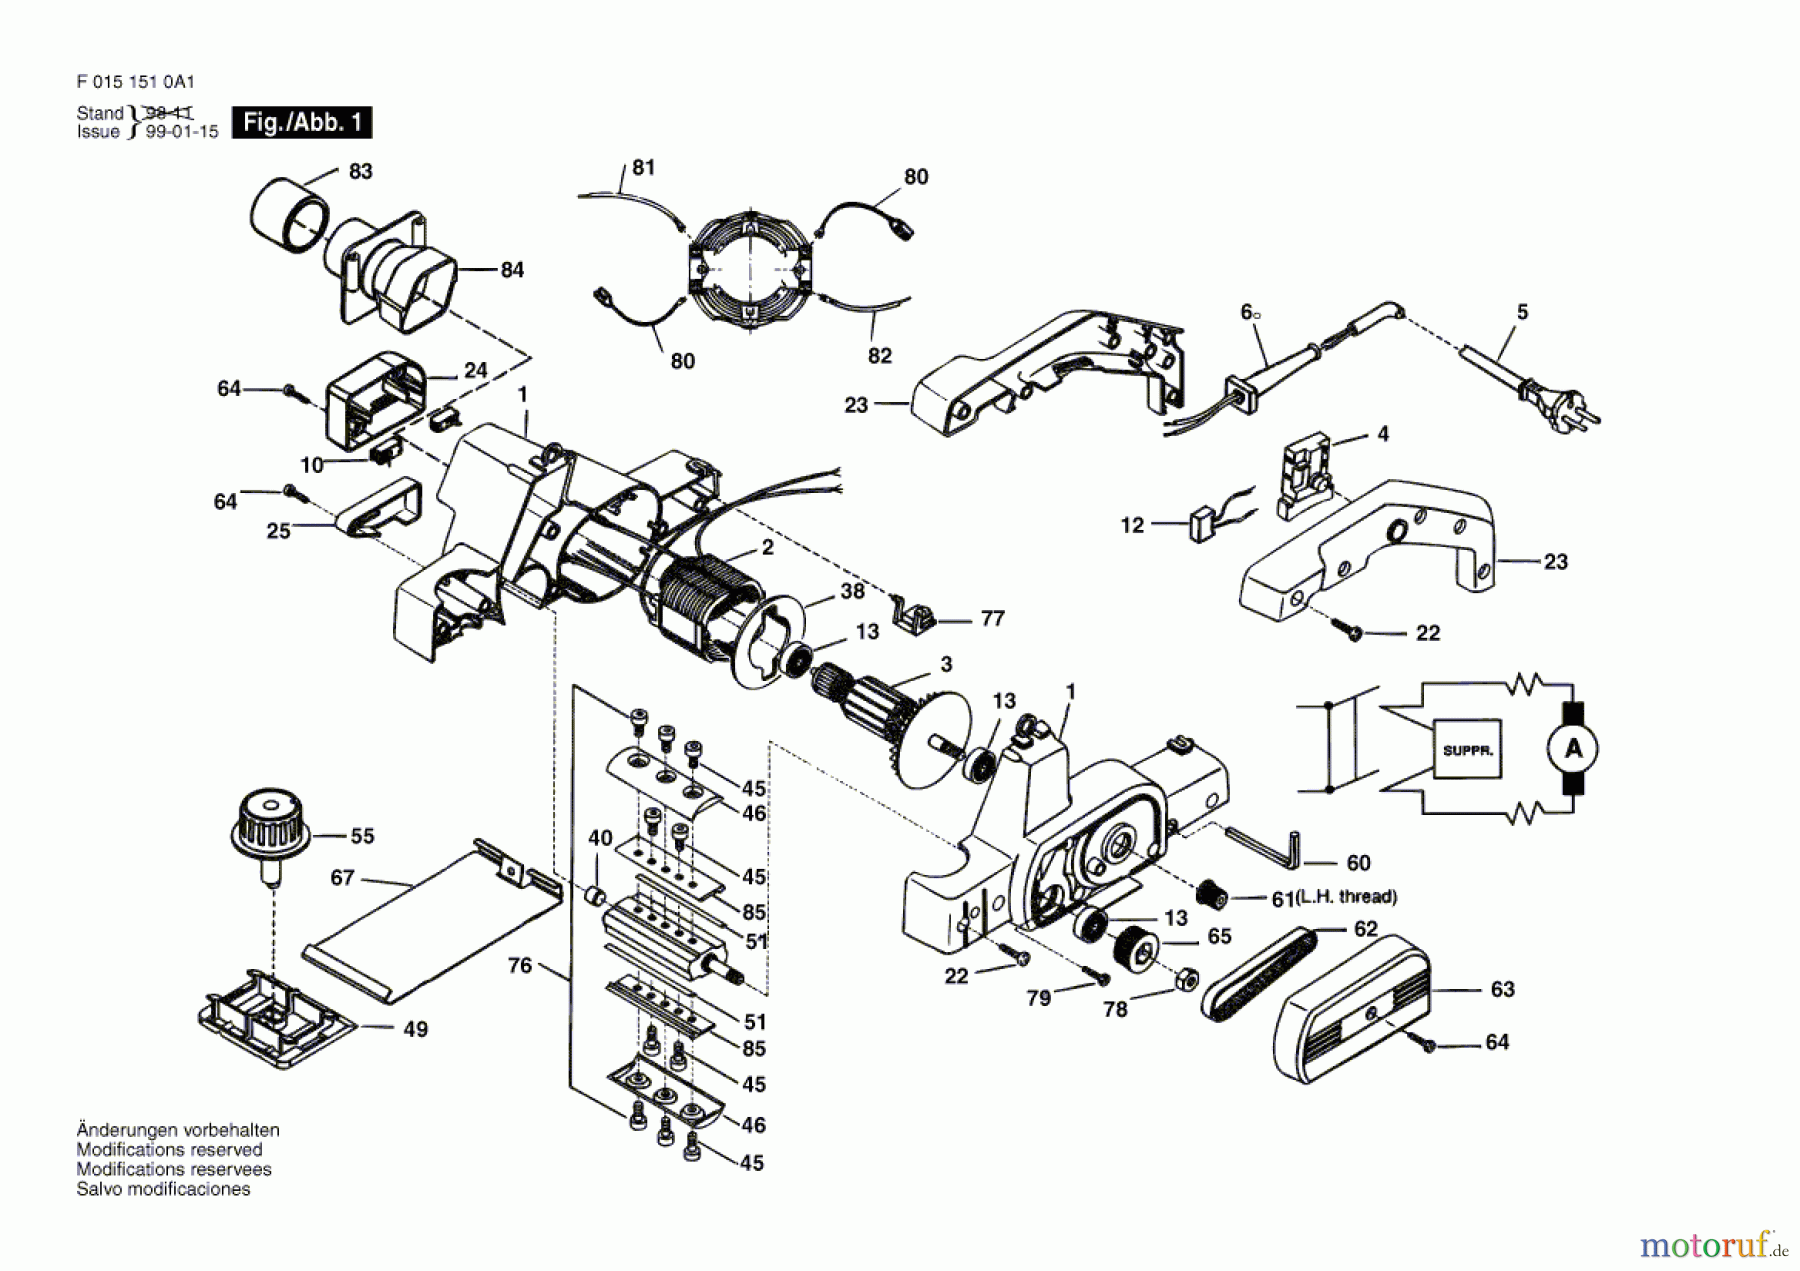  Bosch Werkzeug Handhobel 1510H1 Seite 1